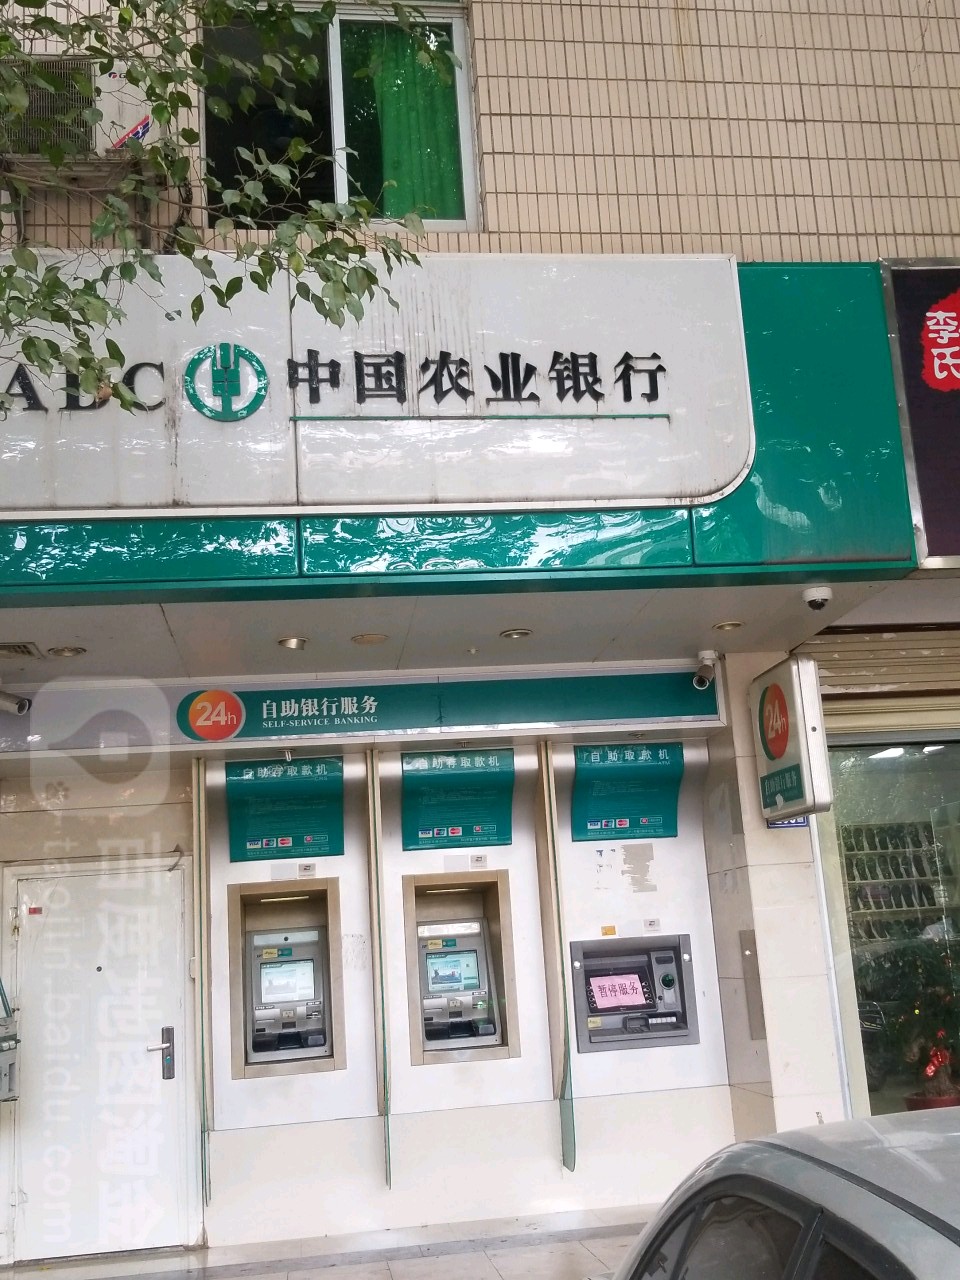 中國農業銀行24小時自助銀行(泉州火炬支行)